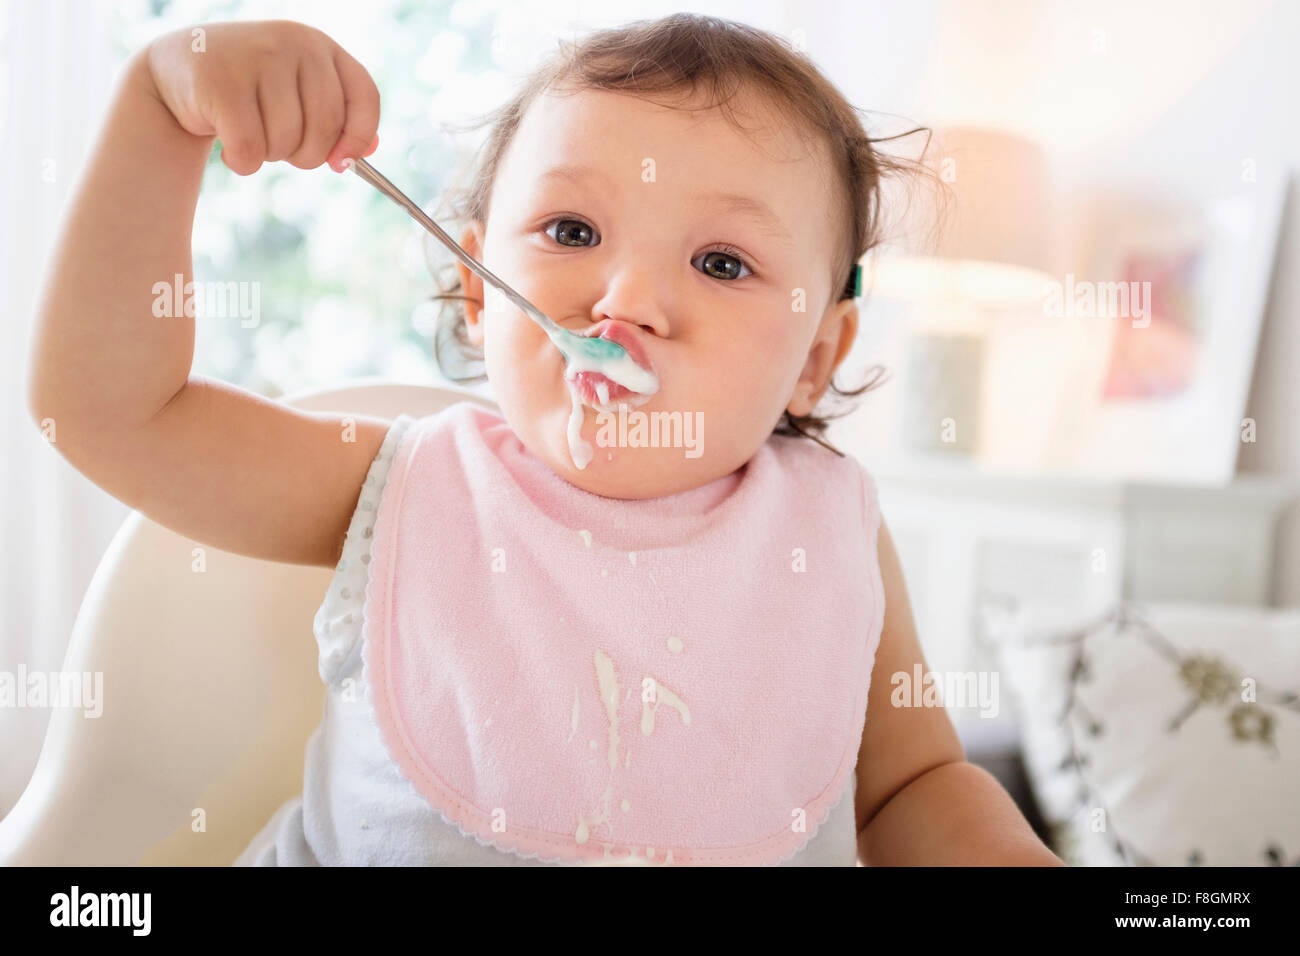 Mixed race baby girl eating yogurt Stock Photo